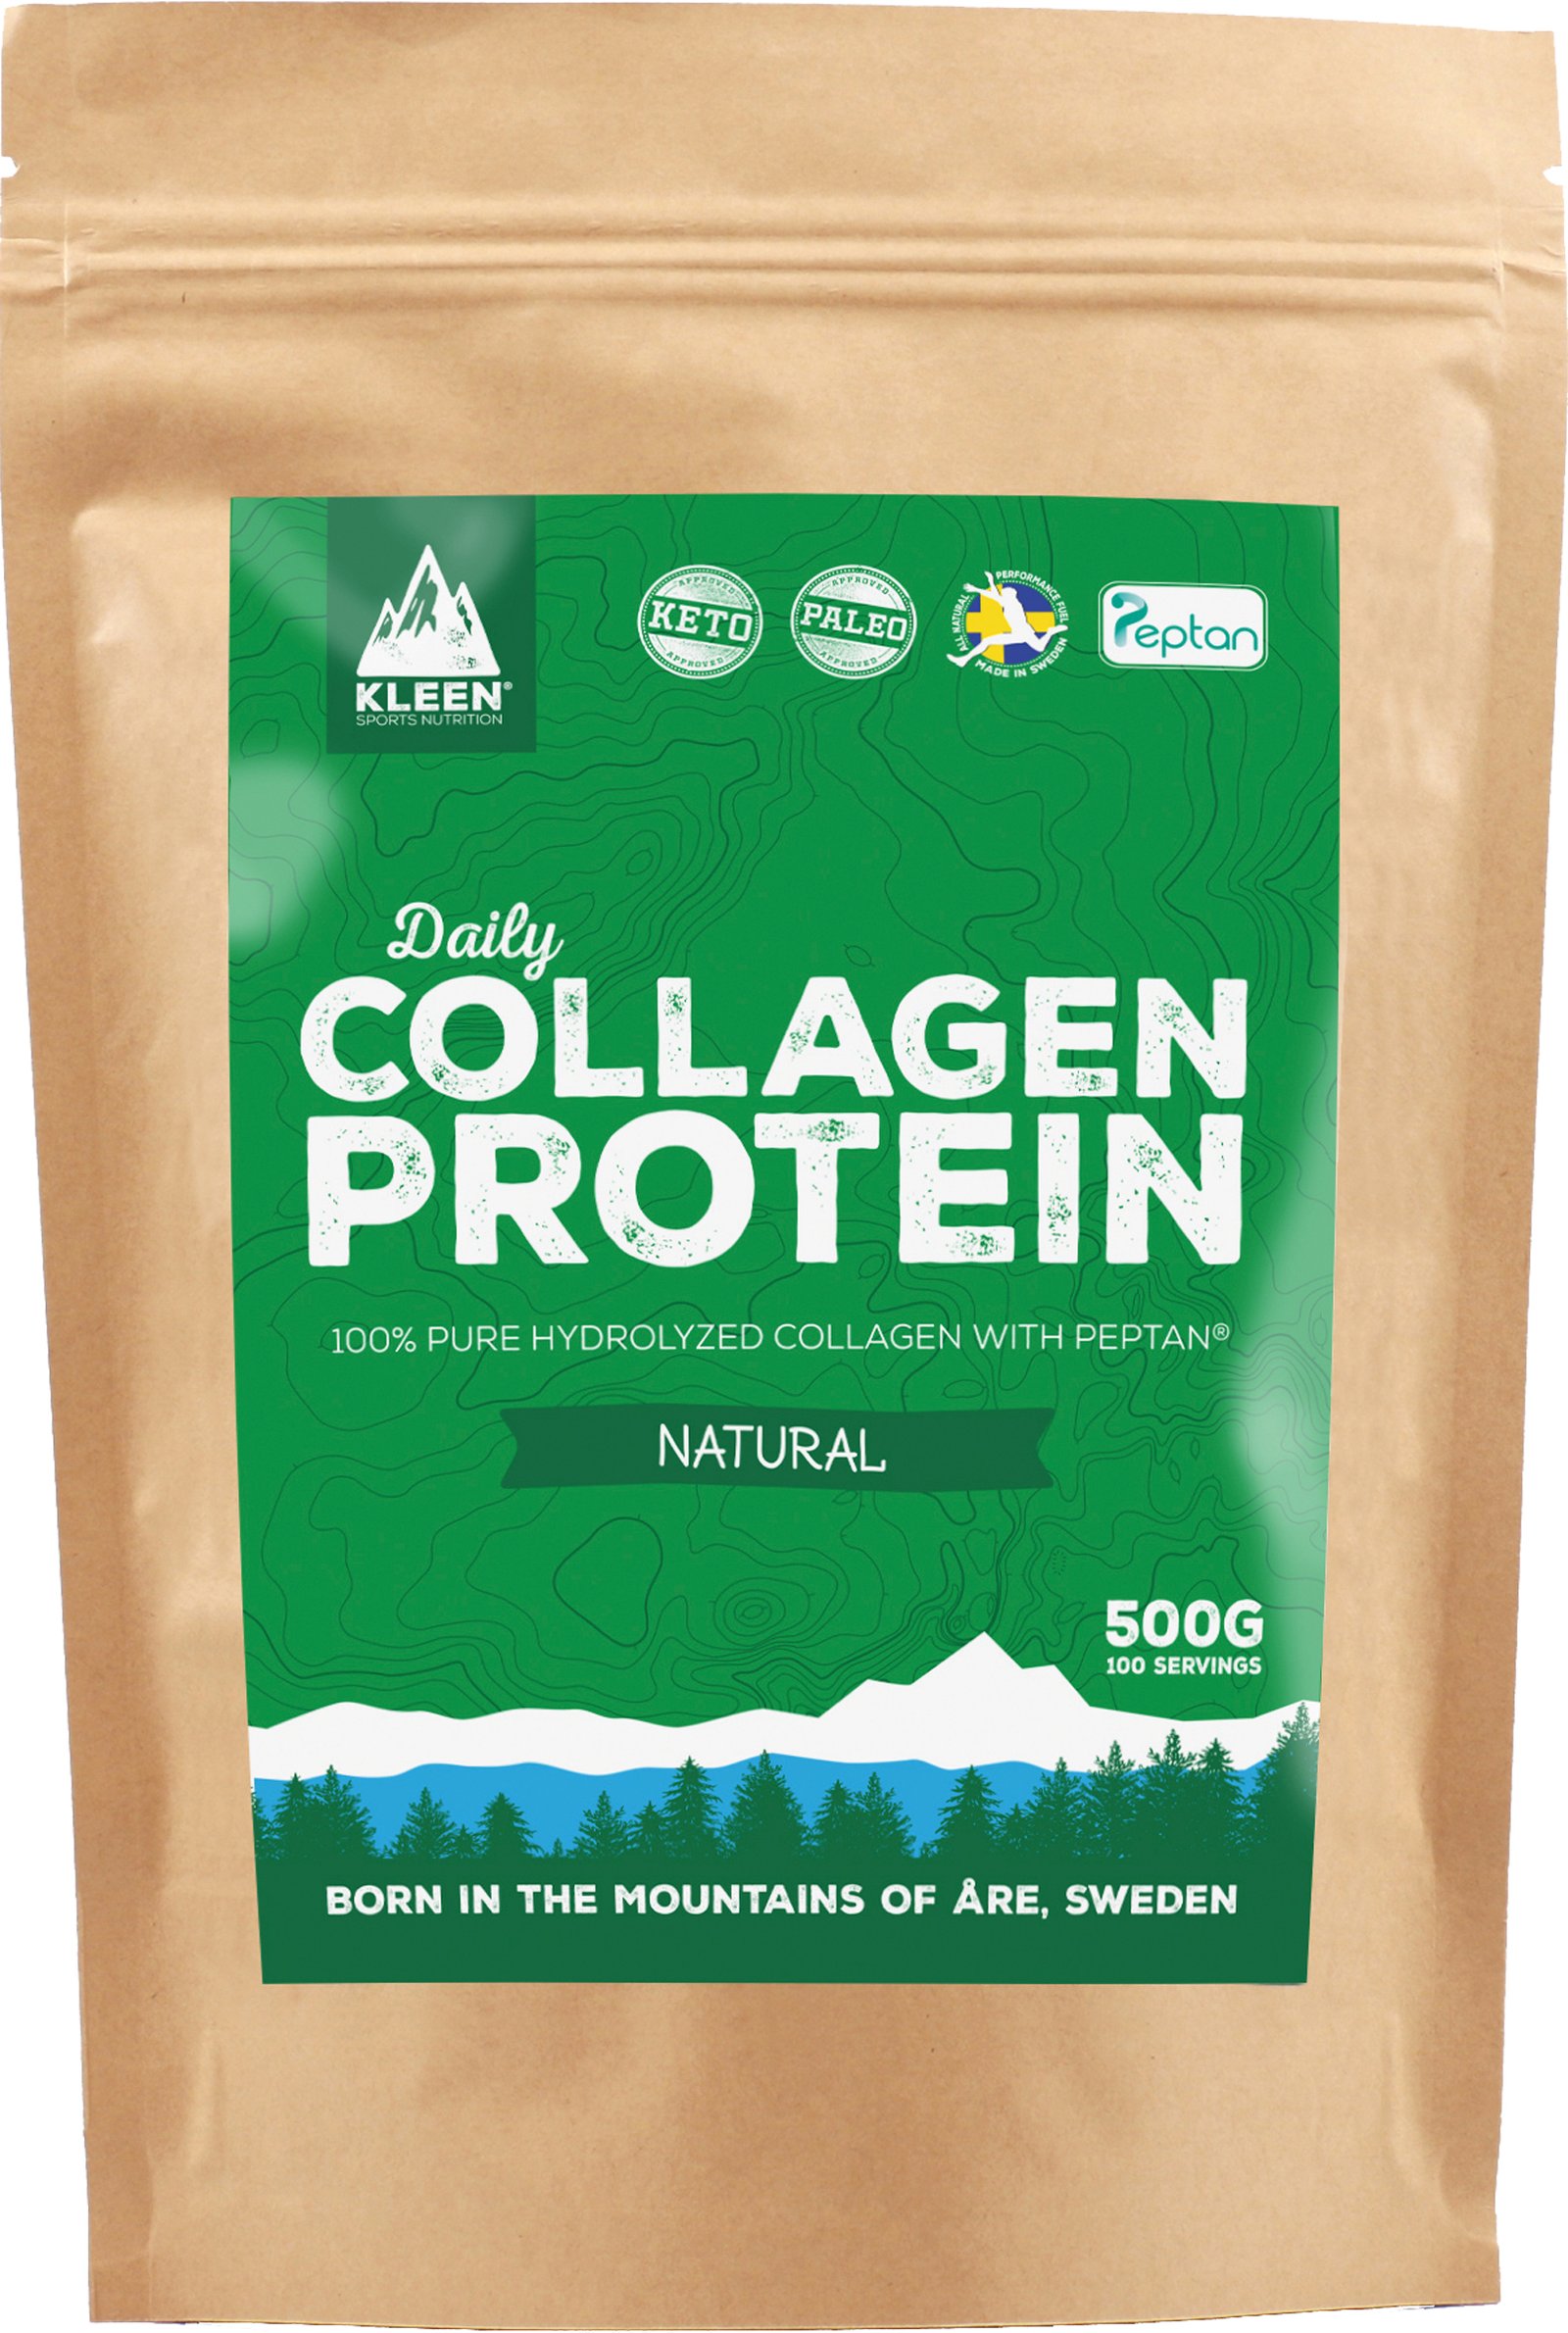 Kleen Daily Collagen Protein 500g